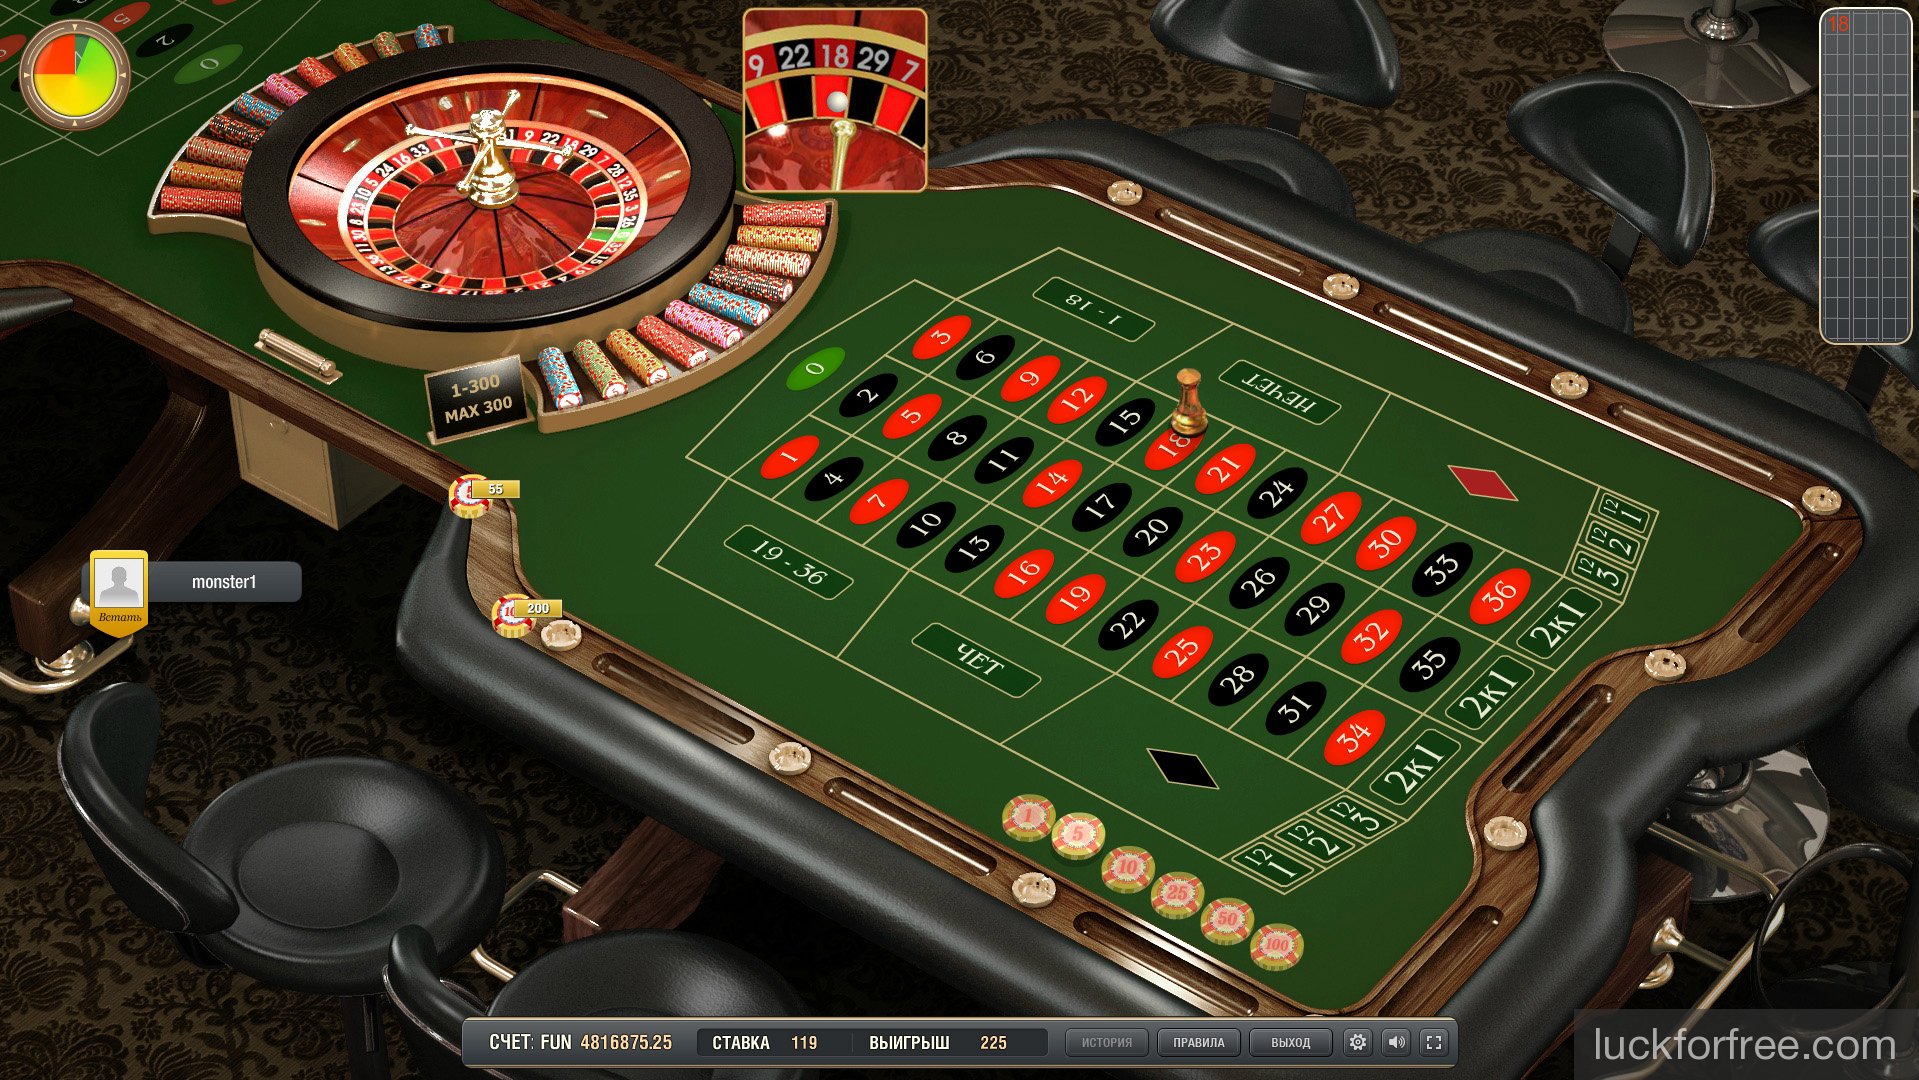 Скачать игровые автоматы на нокиа 5800 покер онлайн научиться играть бесплатно